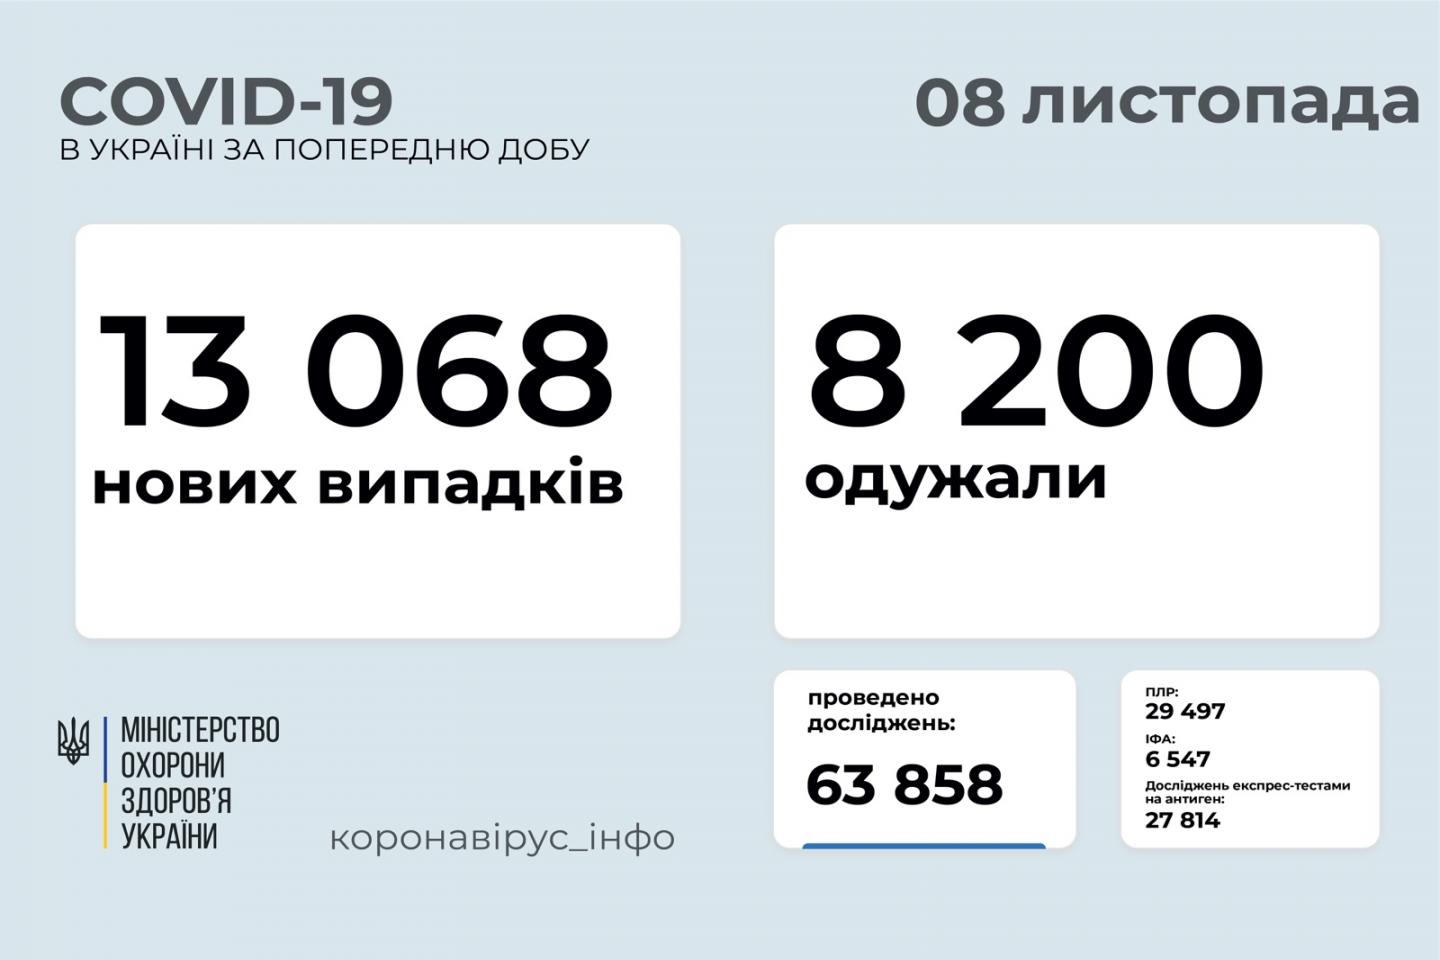 http://dunrada.gov.ua/uploadfile/archive_news/2021/11/08/2021-11-08_8581/images/images-28292.jpg